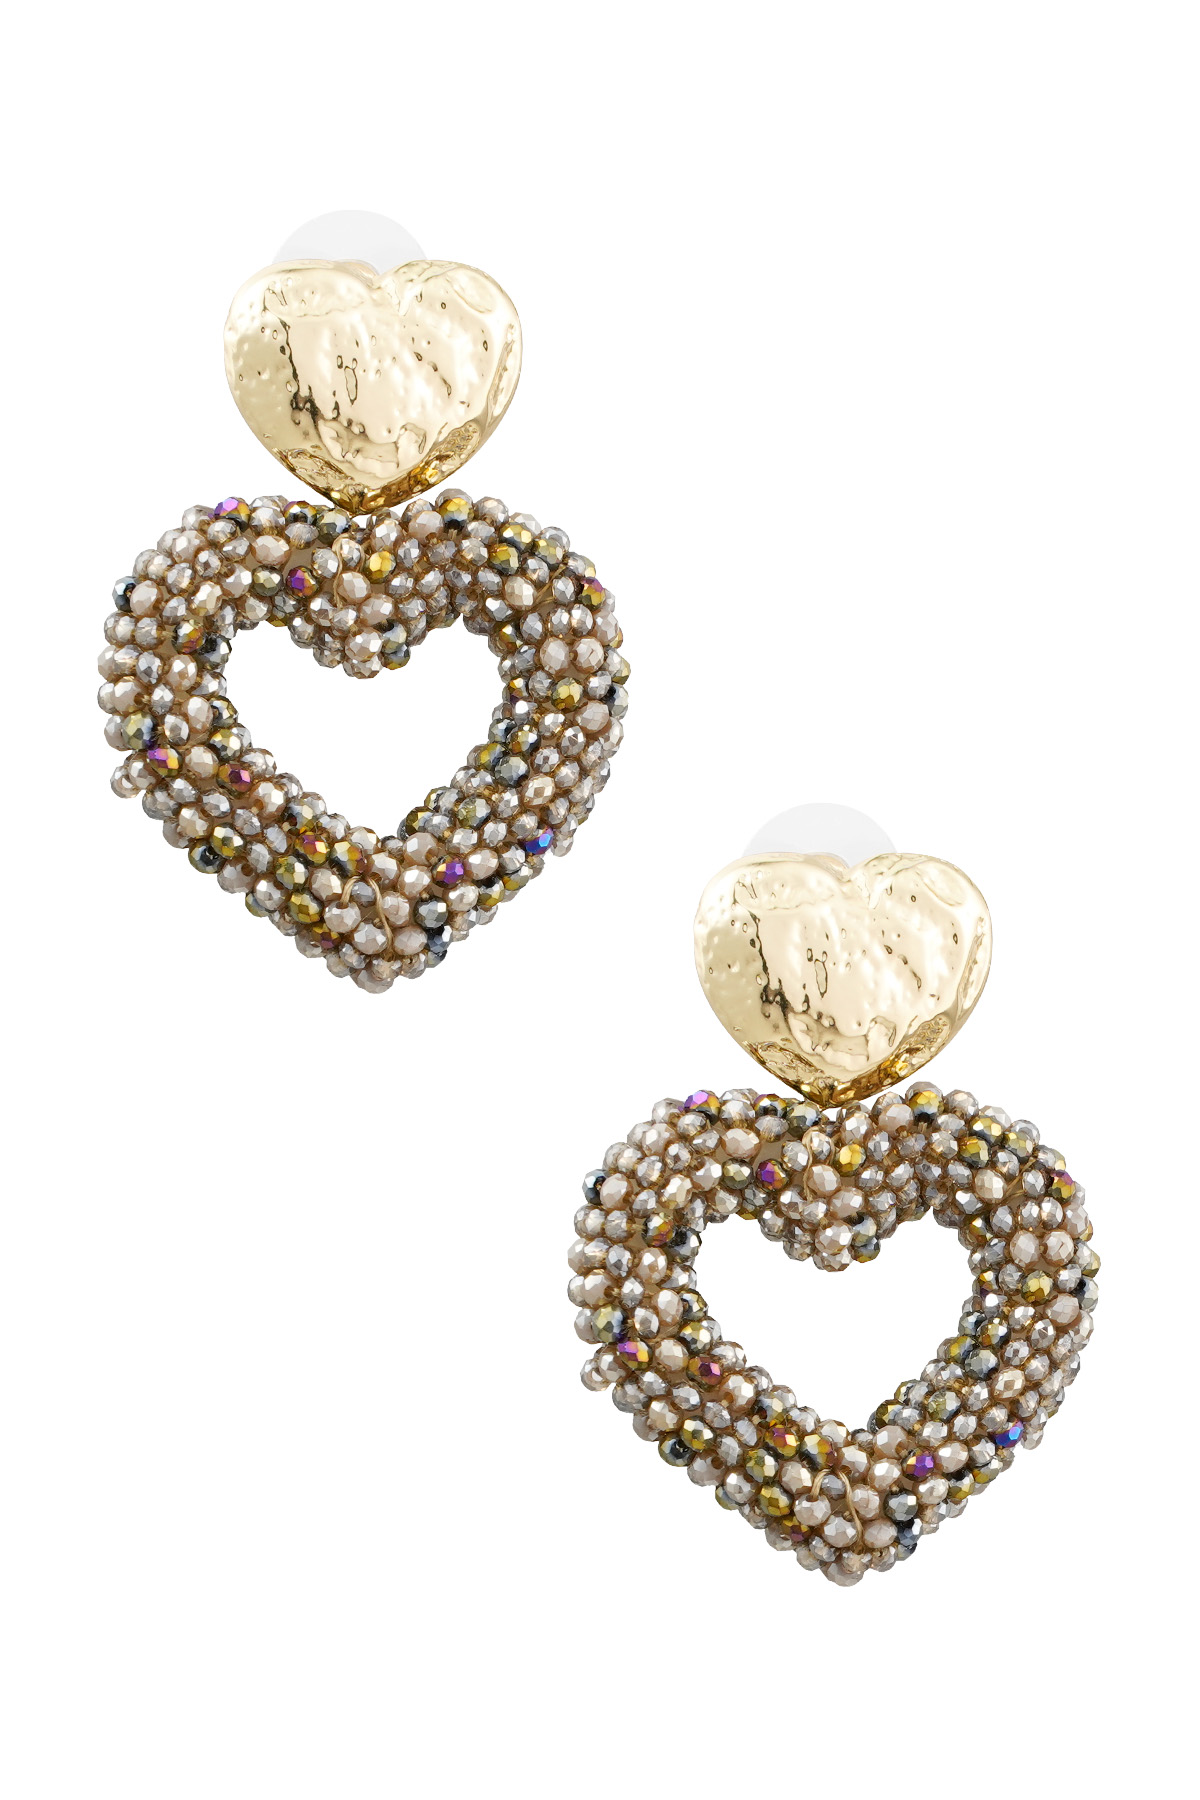 Ohrringe Herz aus Perlen - gold/braun